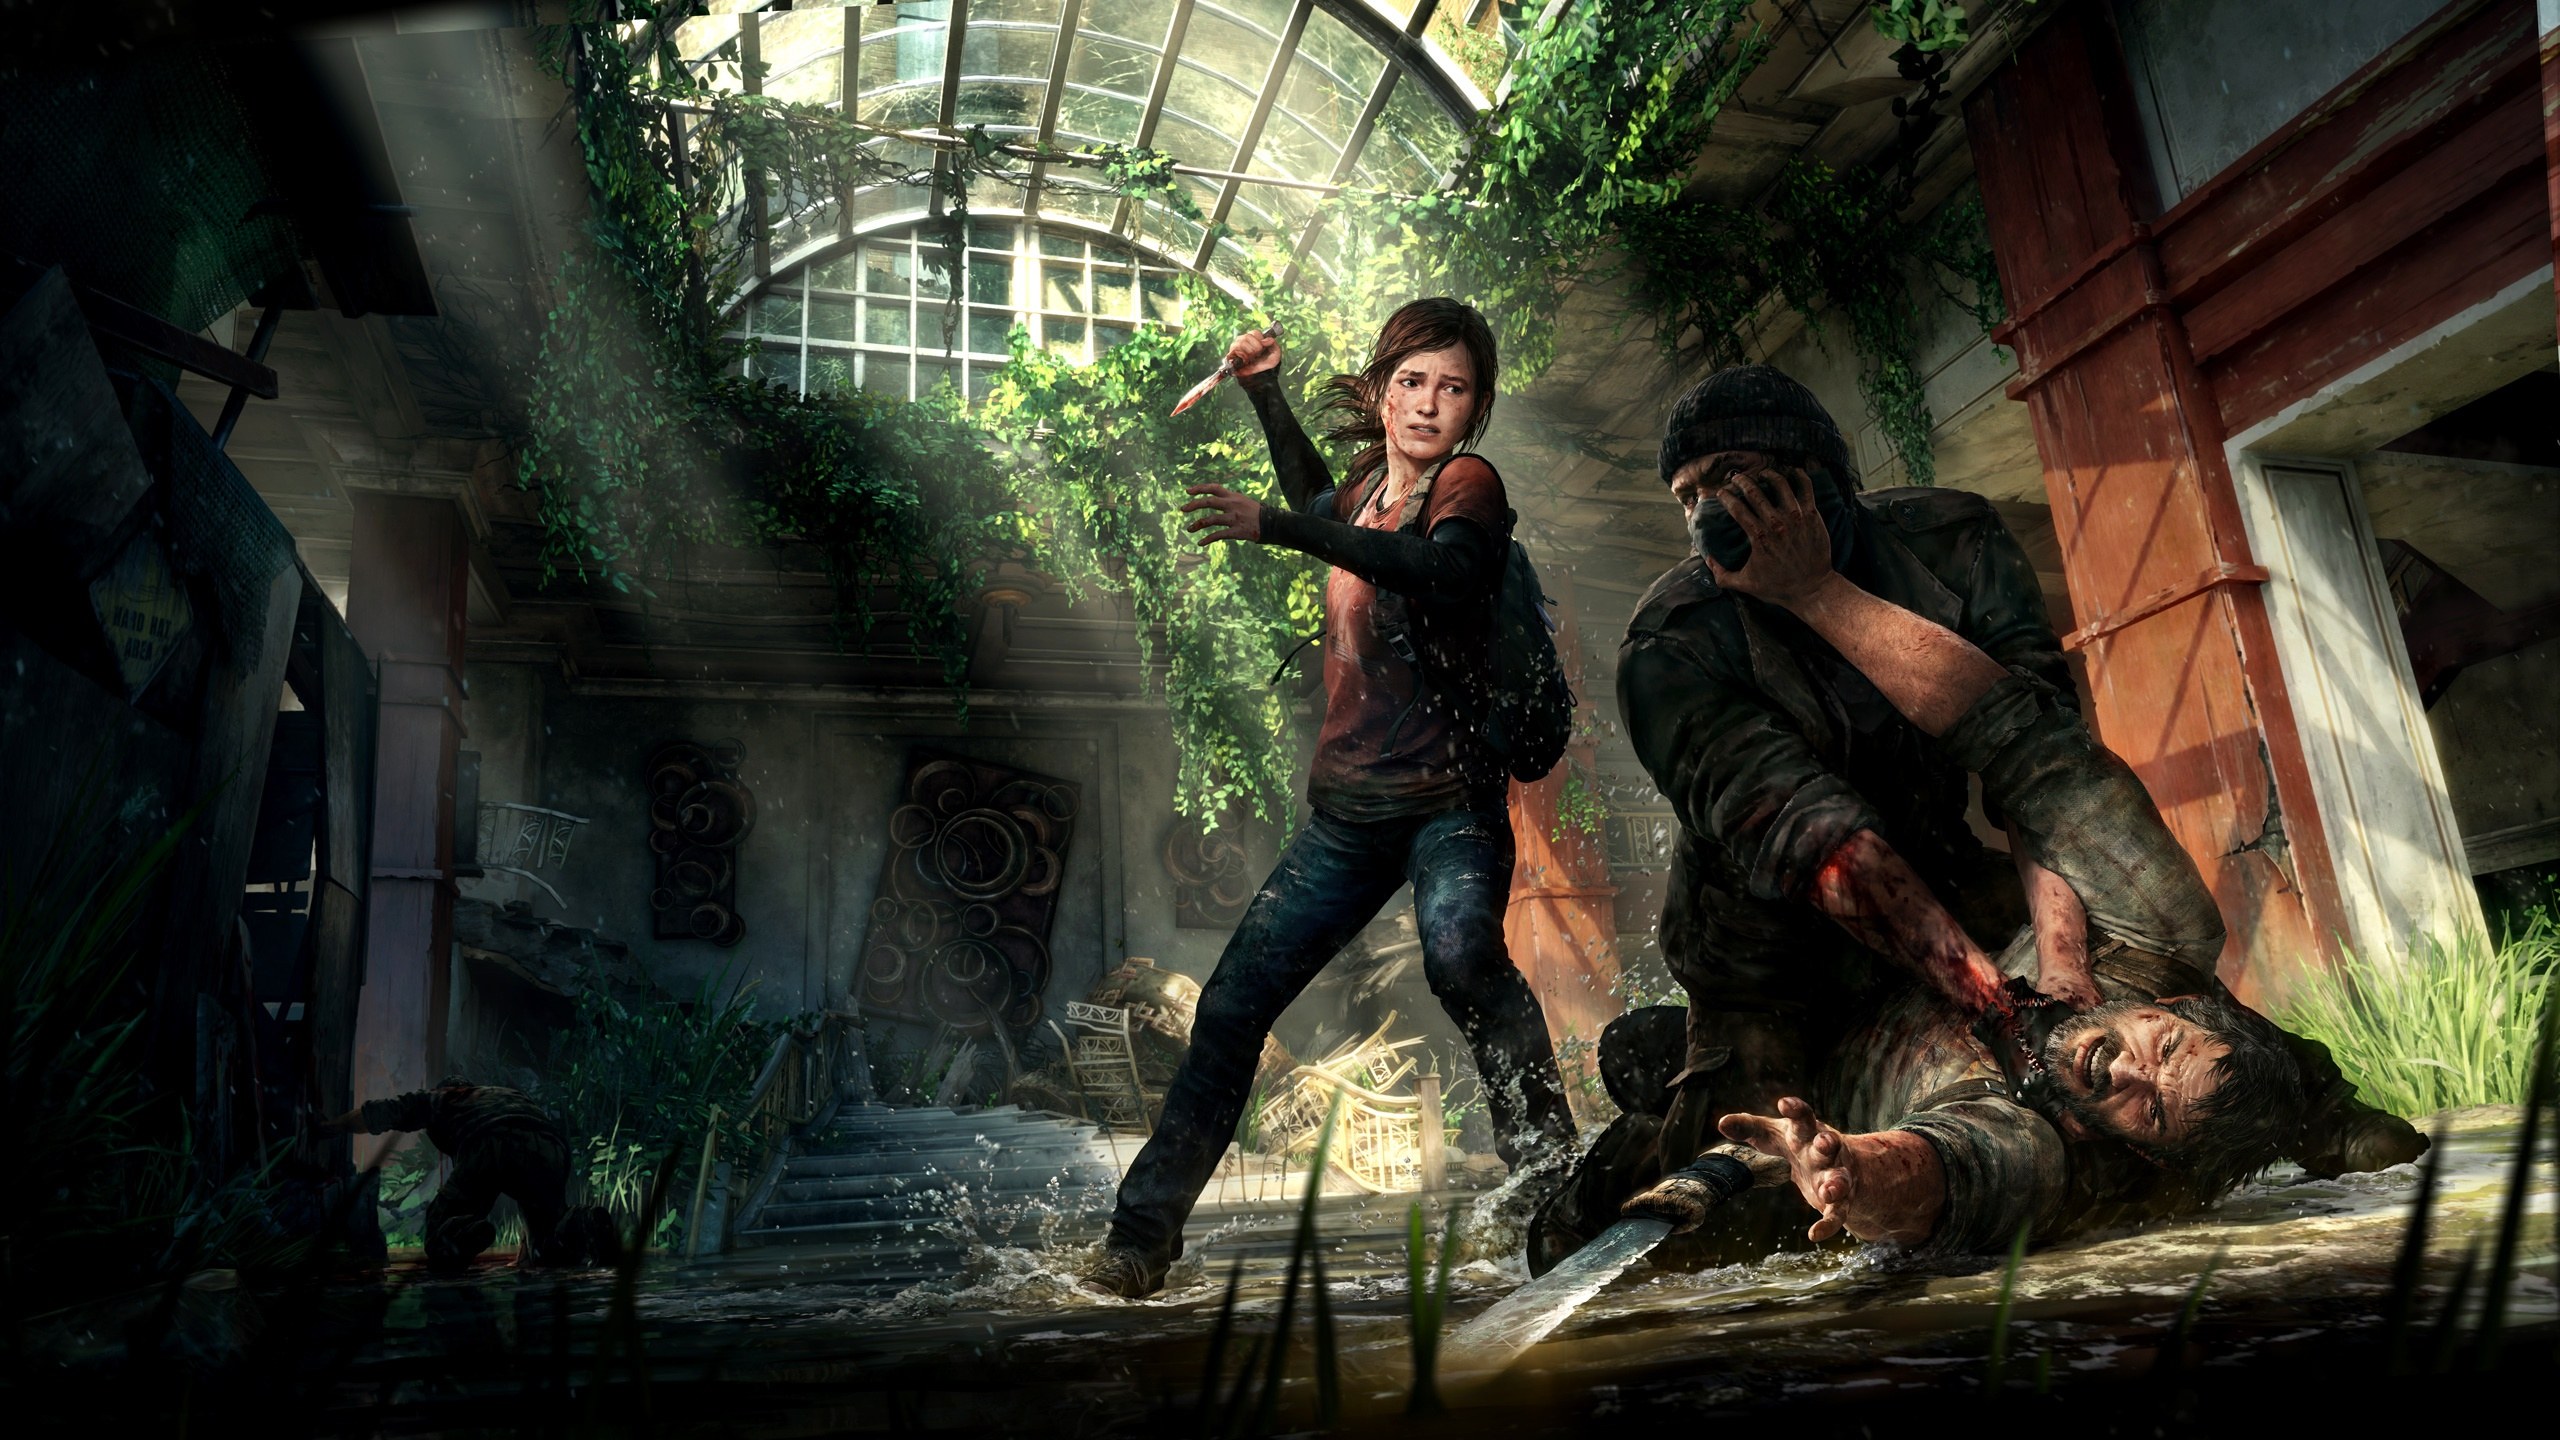 The Last Of Us Ellie Williams Joel Miller Video Games Artwork Video Game Characters Video Game Art N 2560x1440